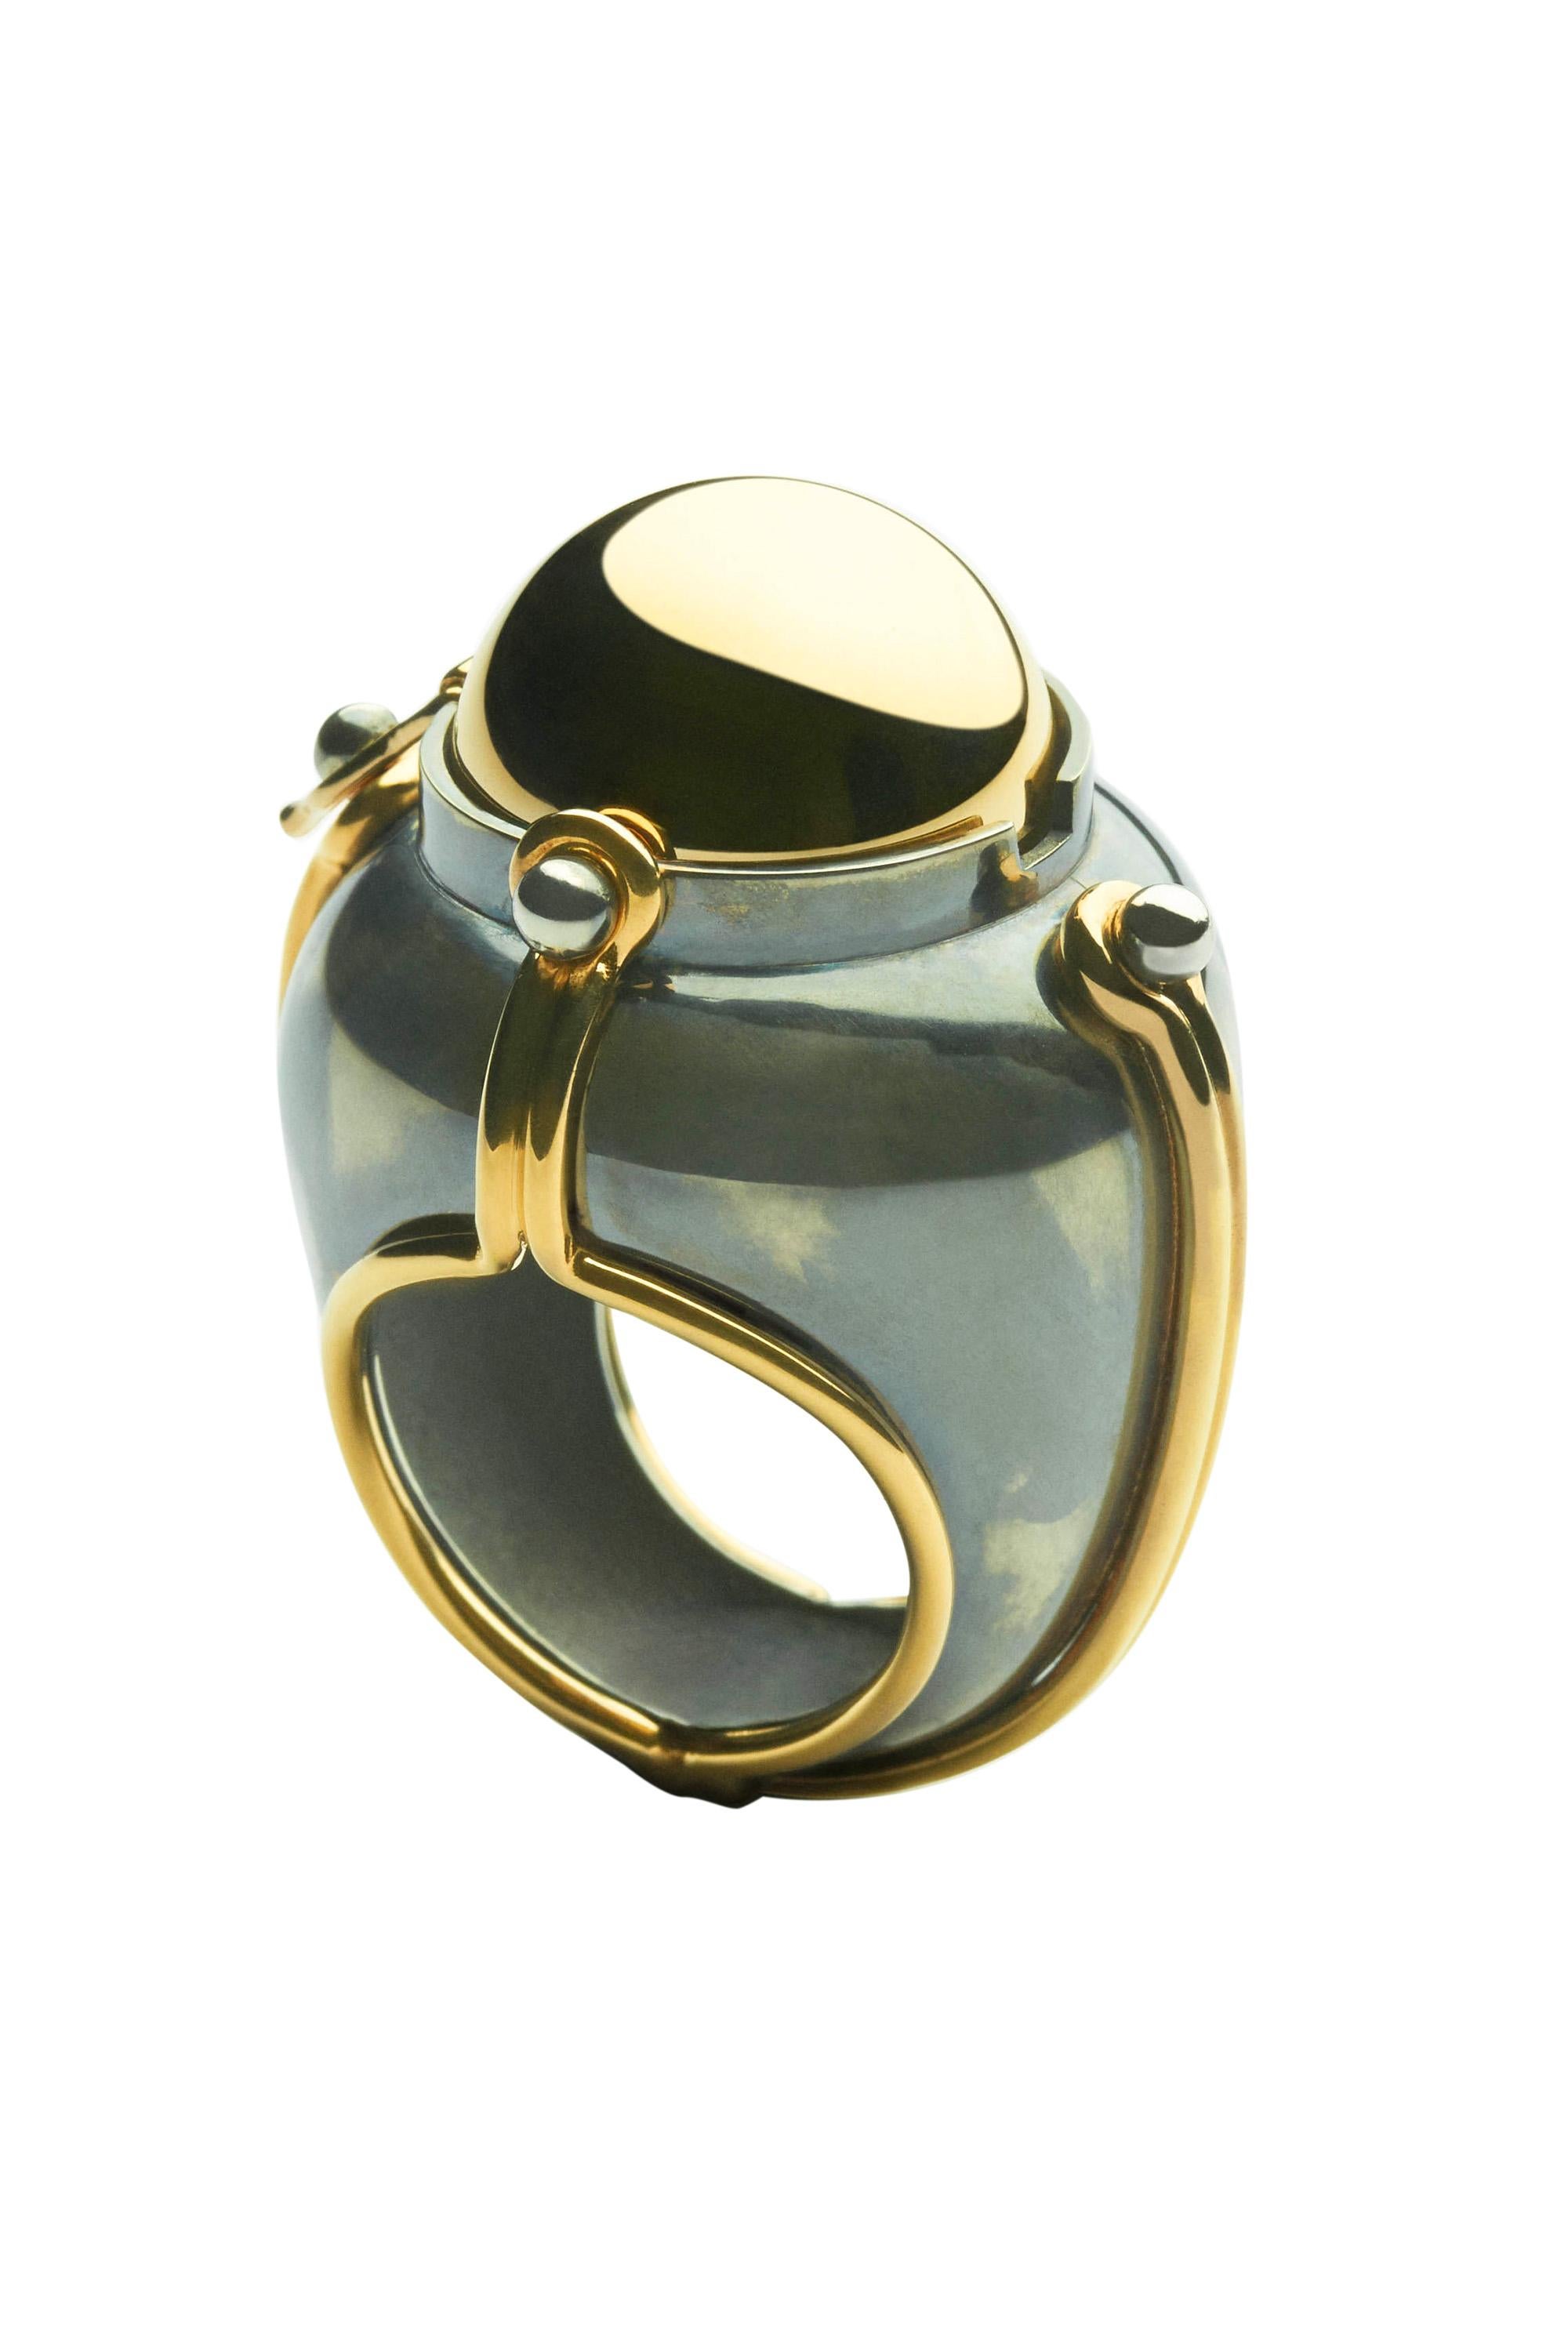 Ring aus Gold und Silber. Drehbare Kugel, die einen Lapislazuli zeigt, der von einem mit einem Diamanten besetzten Weißgoldring umgeben ist.

Einzelheiten:
Lapislazuli: ø 14 mm 
Diamanten: 0,03 Karat 
18k Gold: 12 g
Distressed Silber: